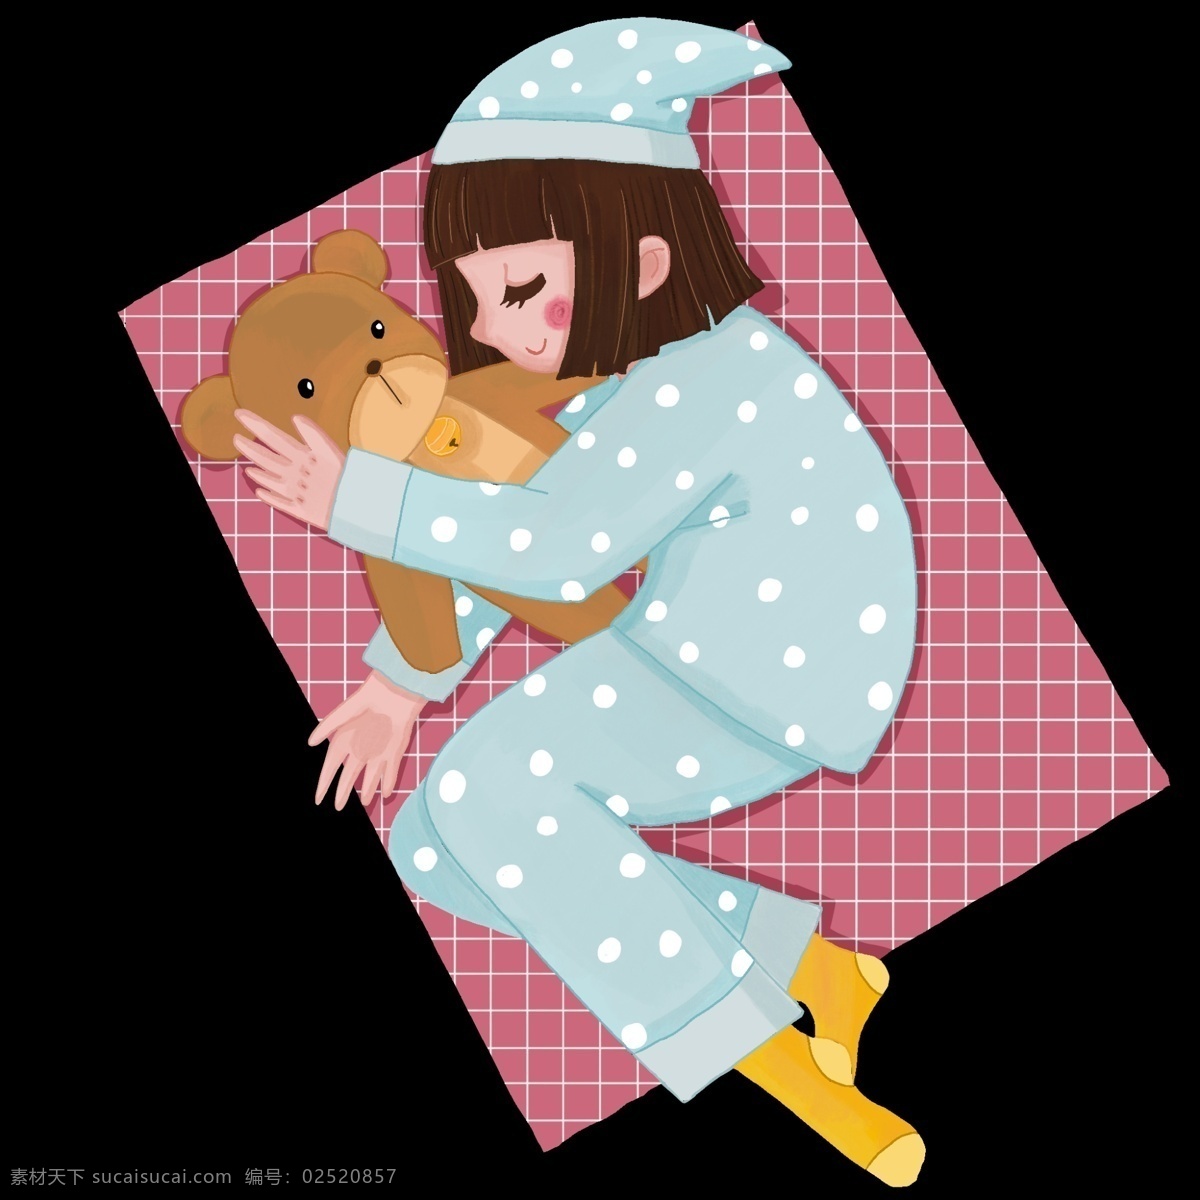 抱 小 熊 睡觉 小女孩 世界 睡眠 日 人物 插画 睡觉的小女孩 可爱的女孩 格子的垫子 卡通人物 黄色的小熊